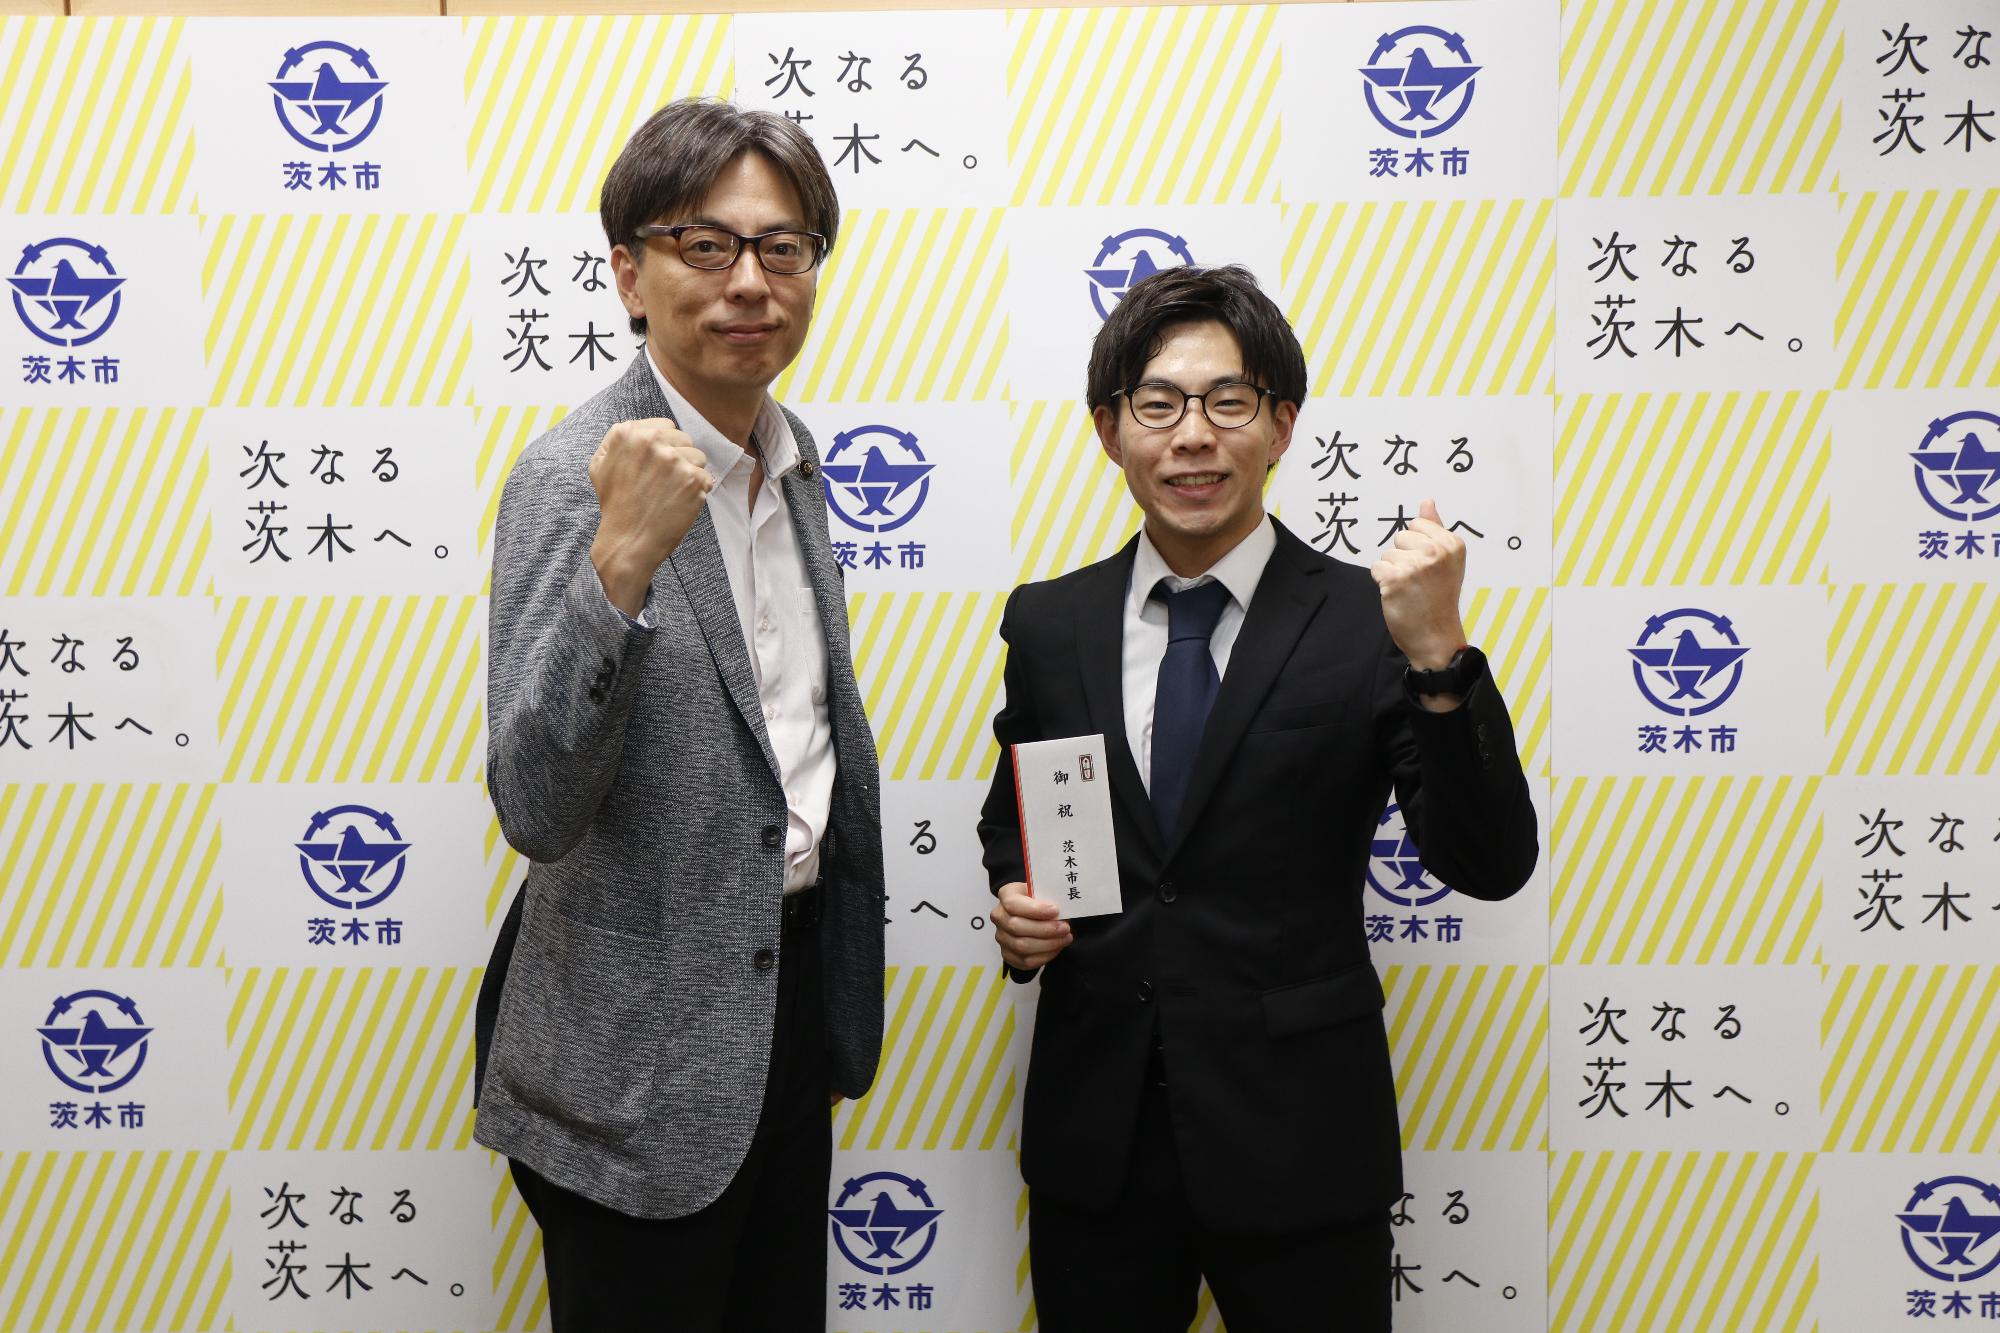 道坂怜生さんとガッツポーズをする市長の写真